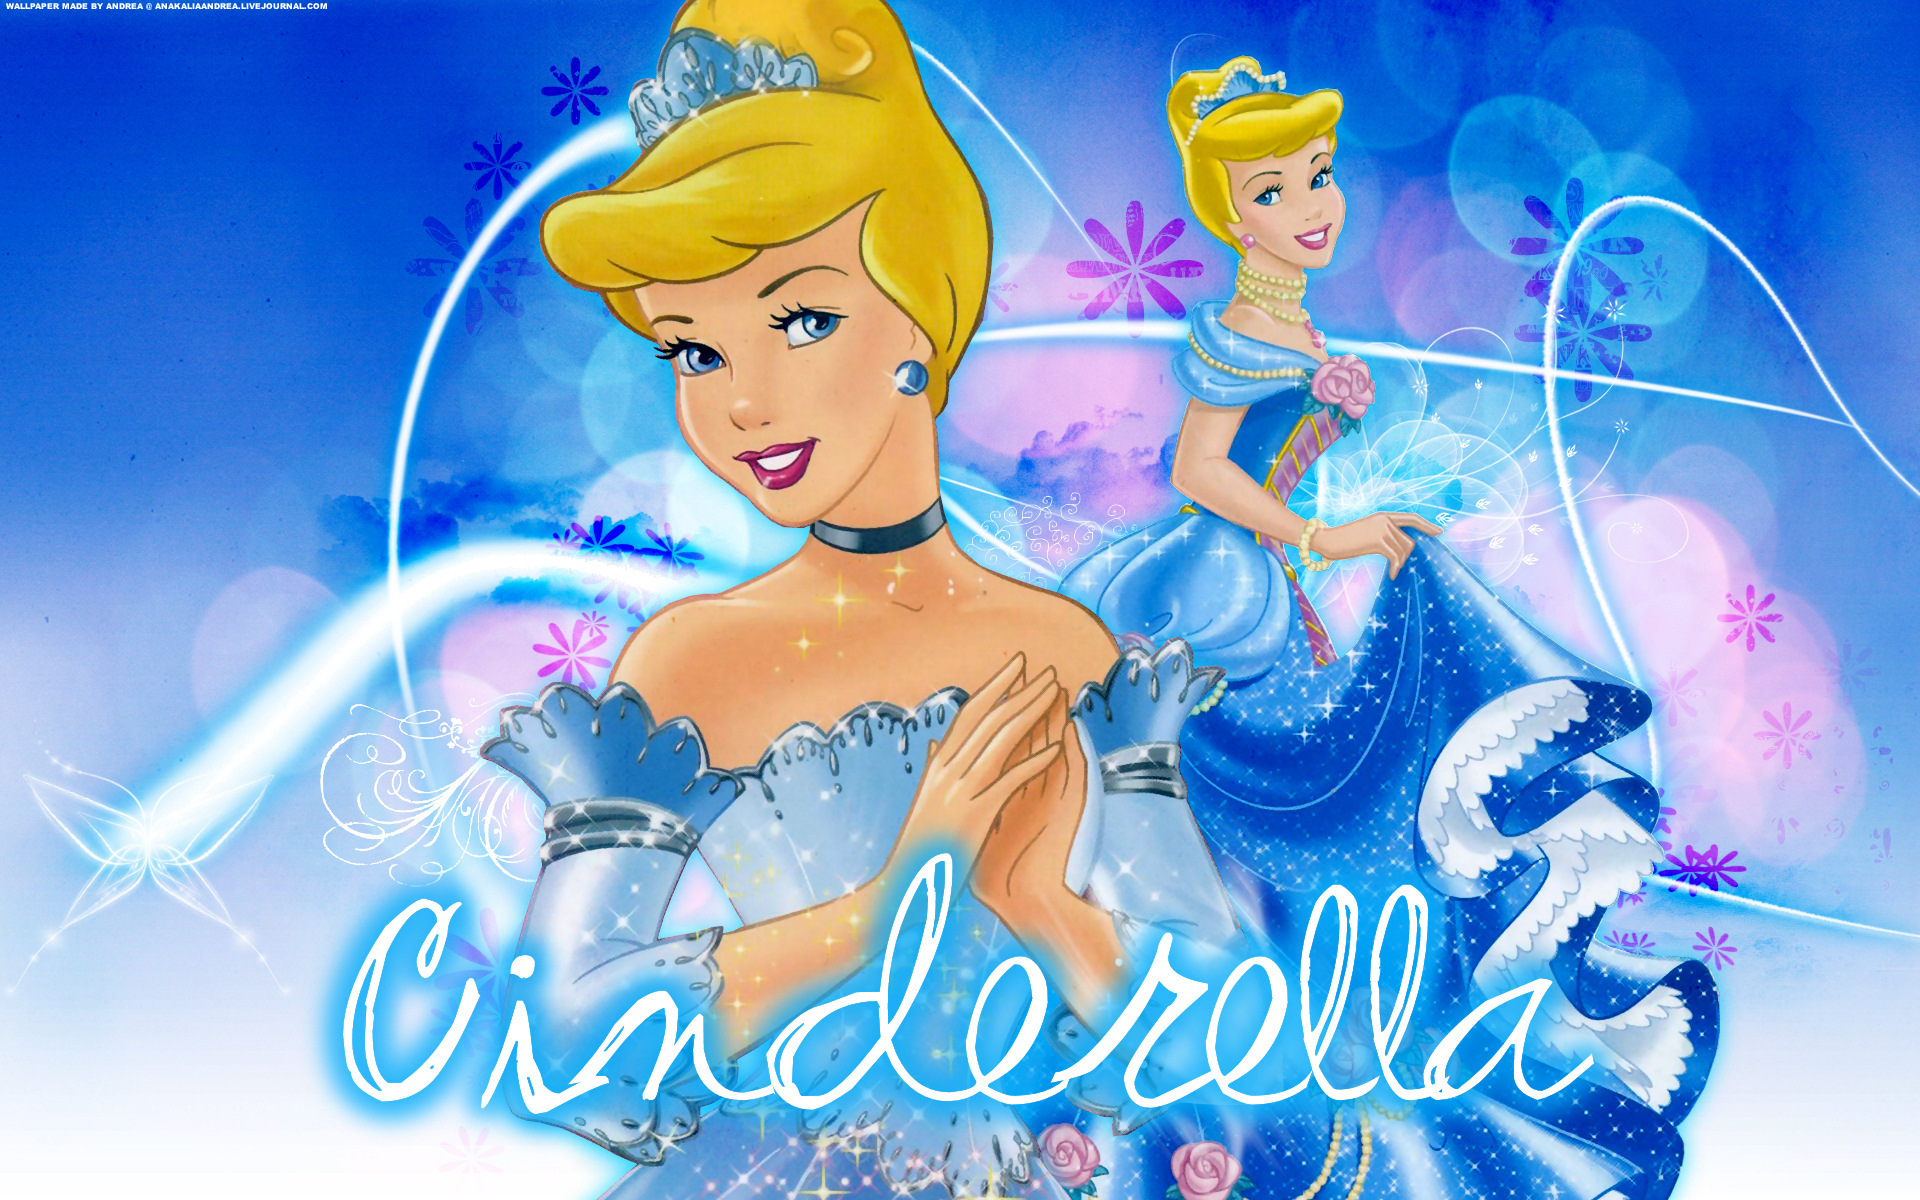 Cinderella movies in Italy